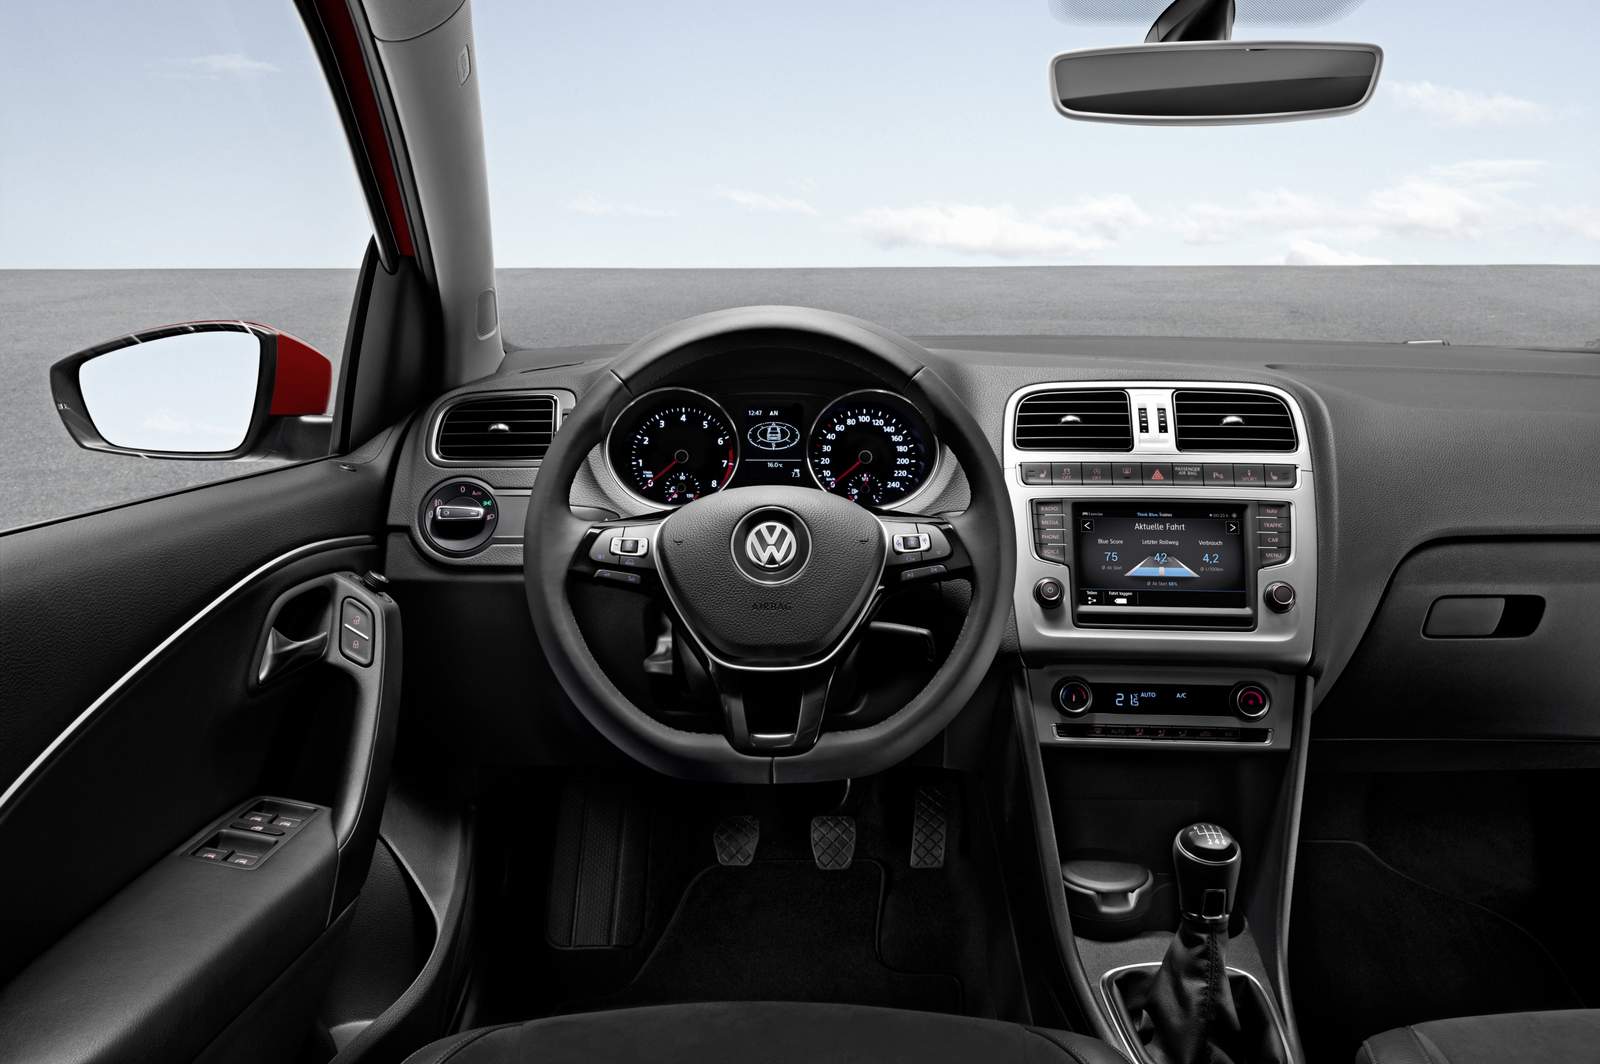 Conheça o novo “Gol 2016” a 7ª geração do líder de mercado da Volkswagen